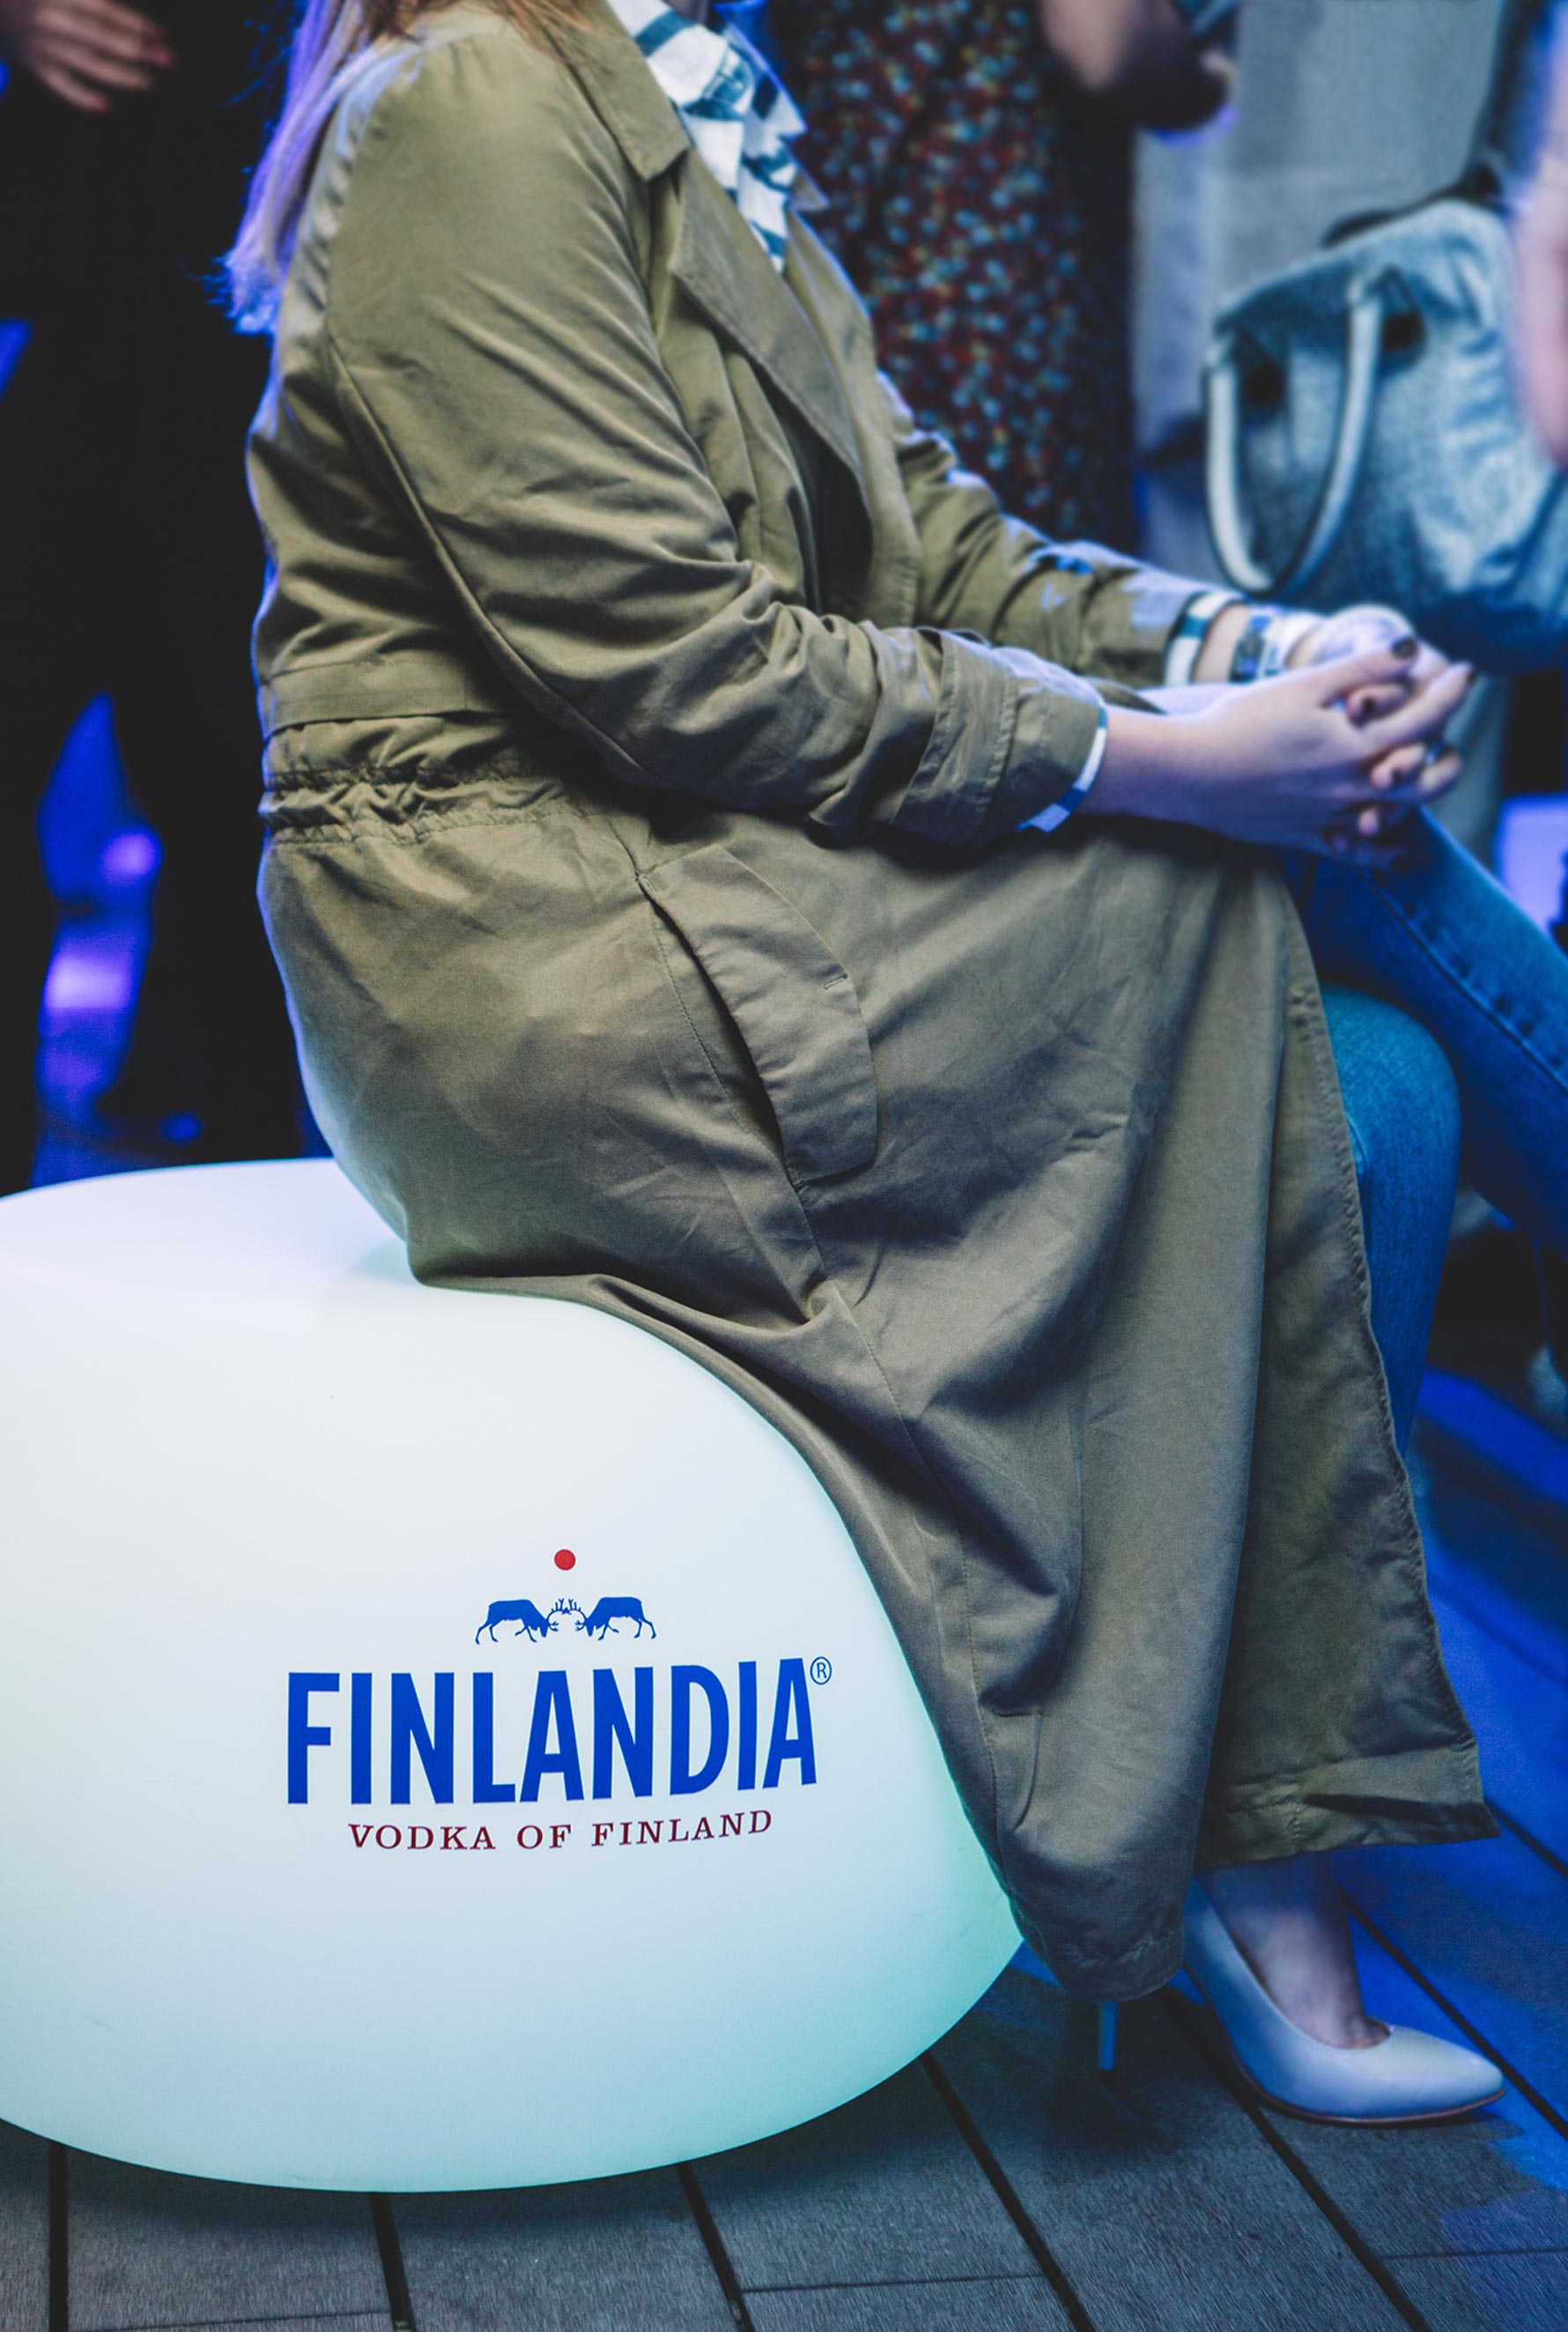 FINLANDIA VODKA. DISCOVER THE LESS ORDINARY